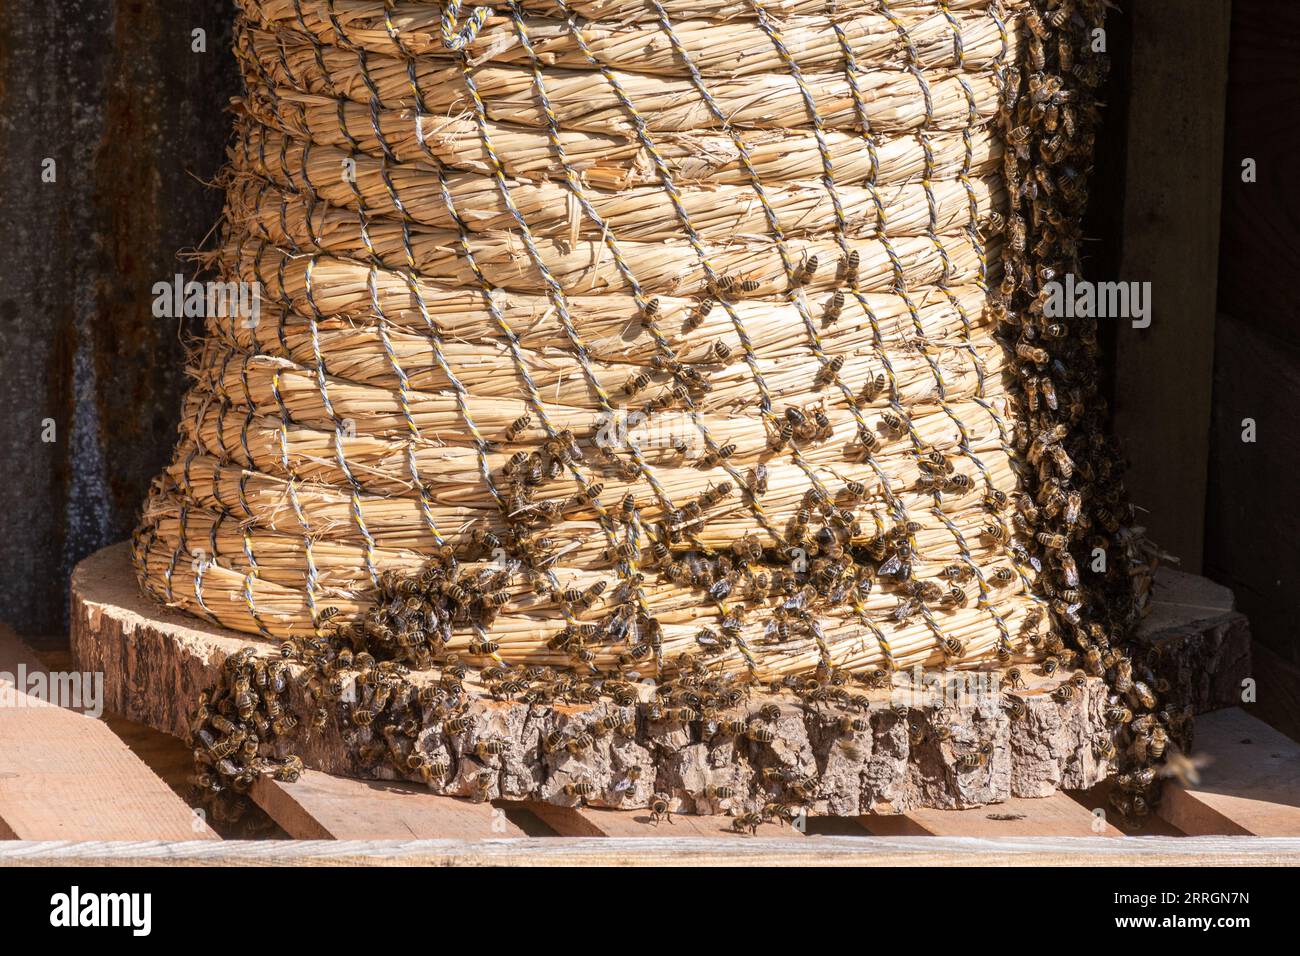 Weidenkorb Bienenstock genannt Skep mit Honigbienen (APIs mellifera) auf der Außenseite, Bienenhaltung, Imkerei Stockfoto